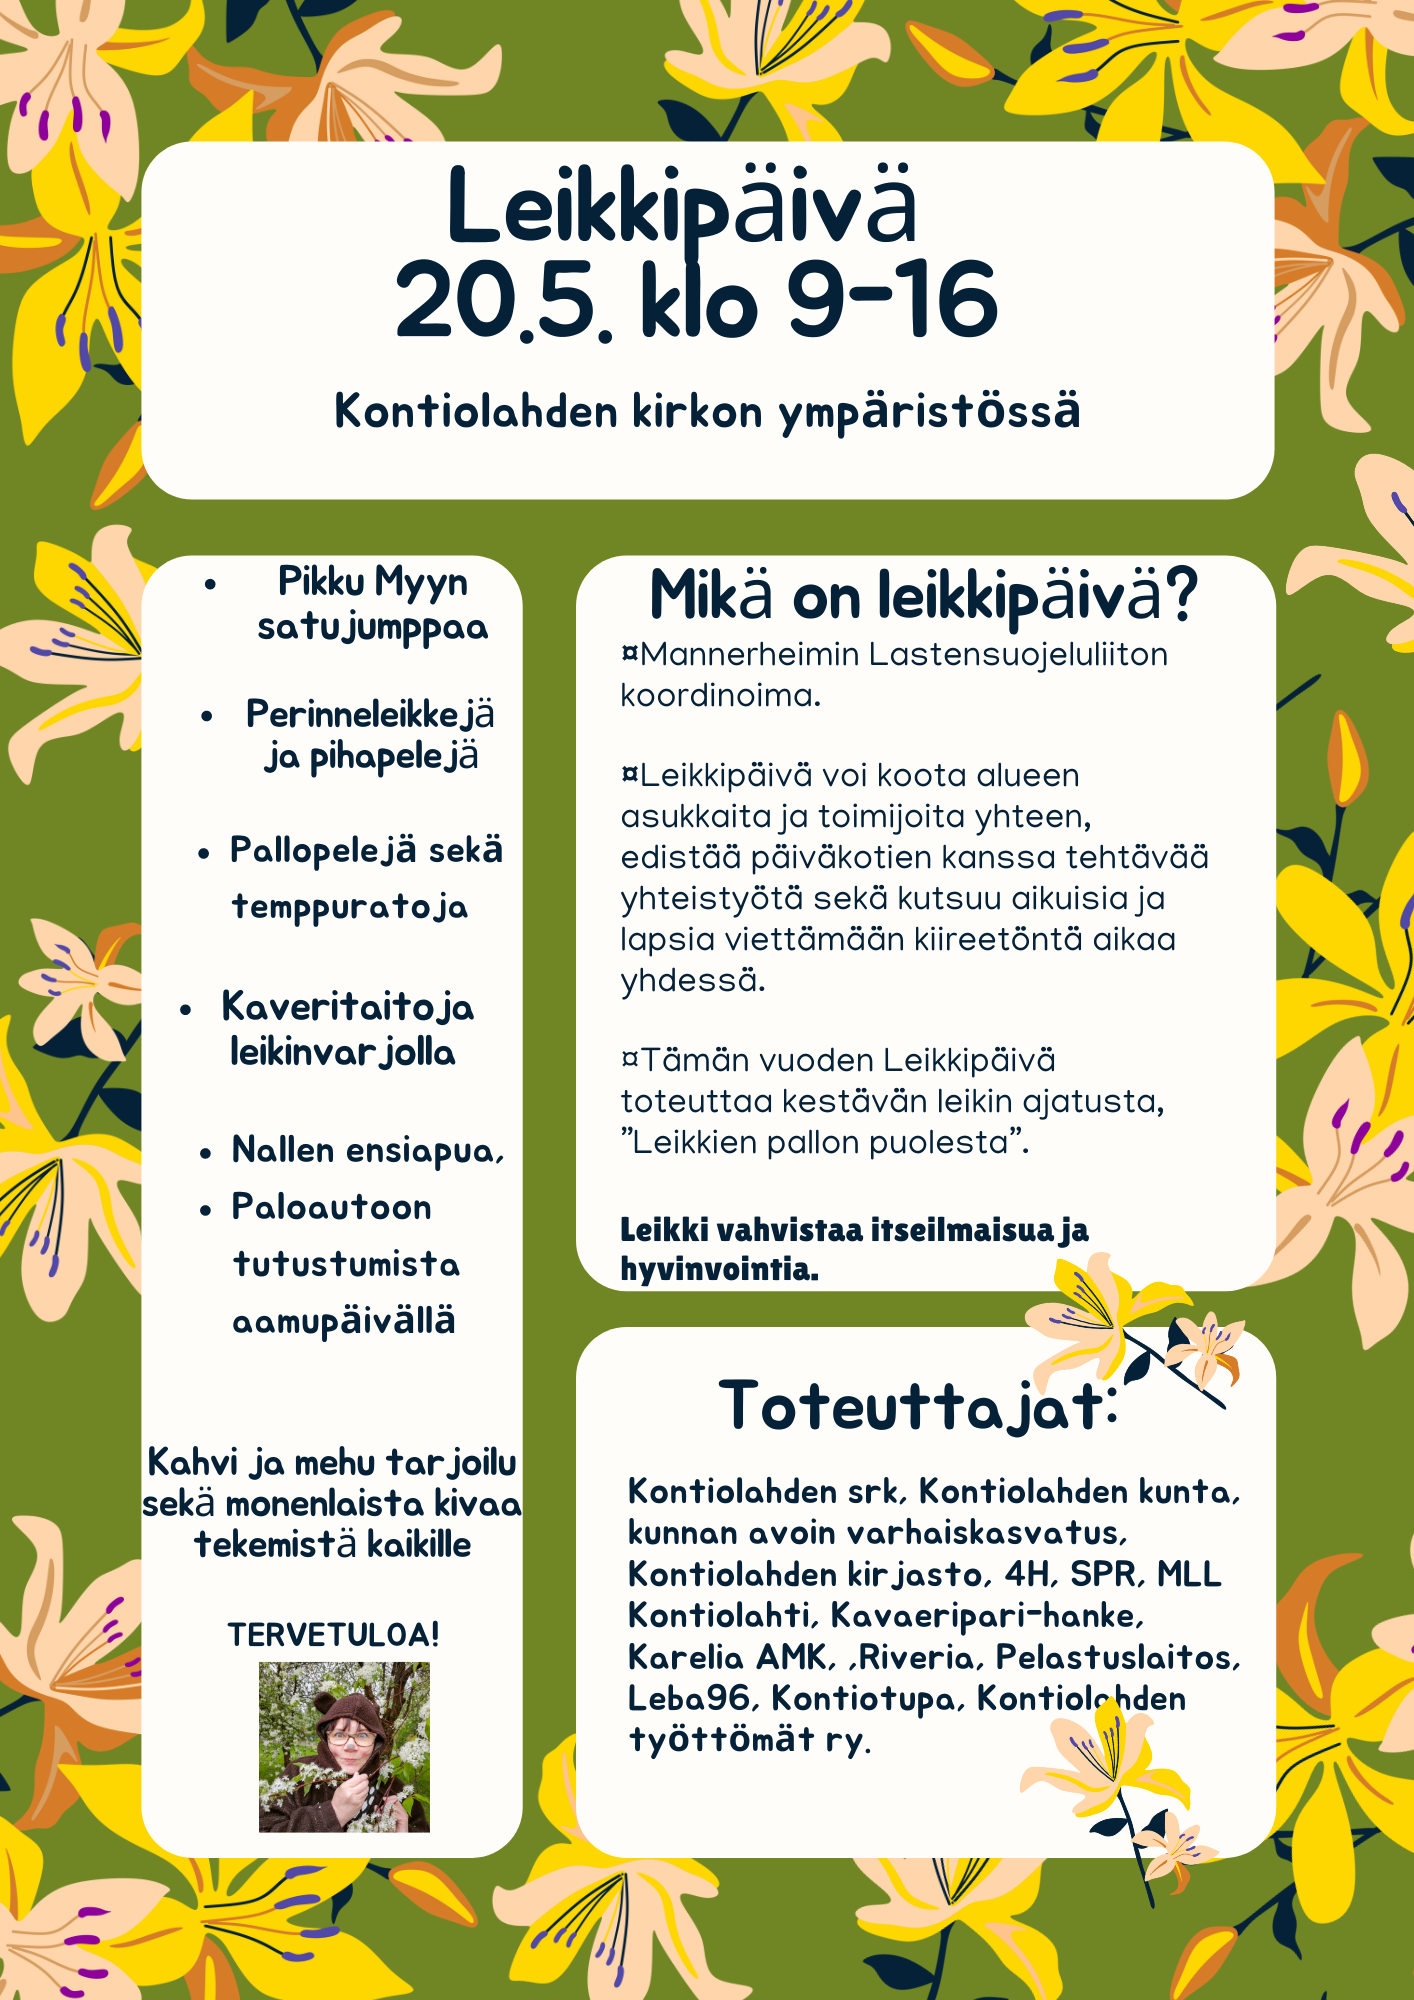 Leikkipäivä Kontiolahden kirkon pihalla ja ympäristössä pe 20.5. klo 9-16.